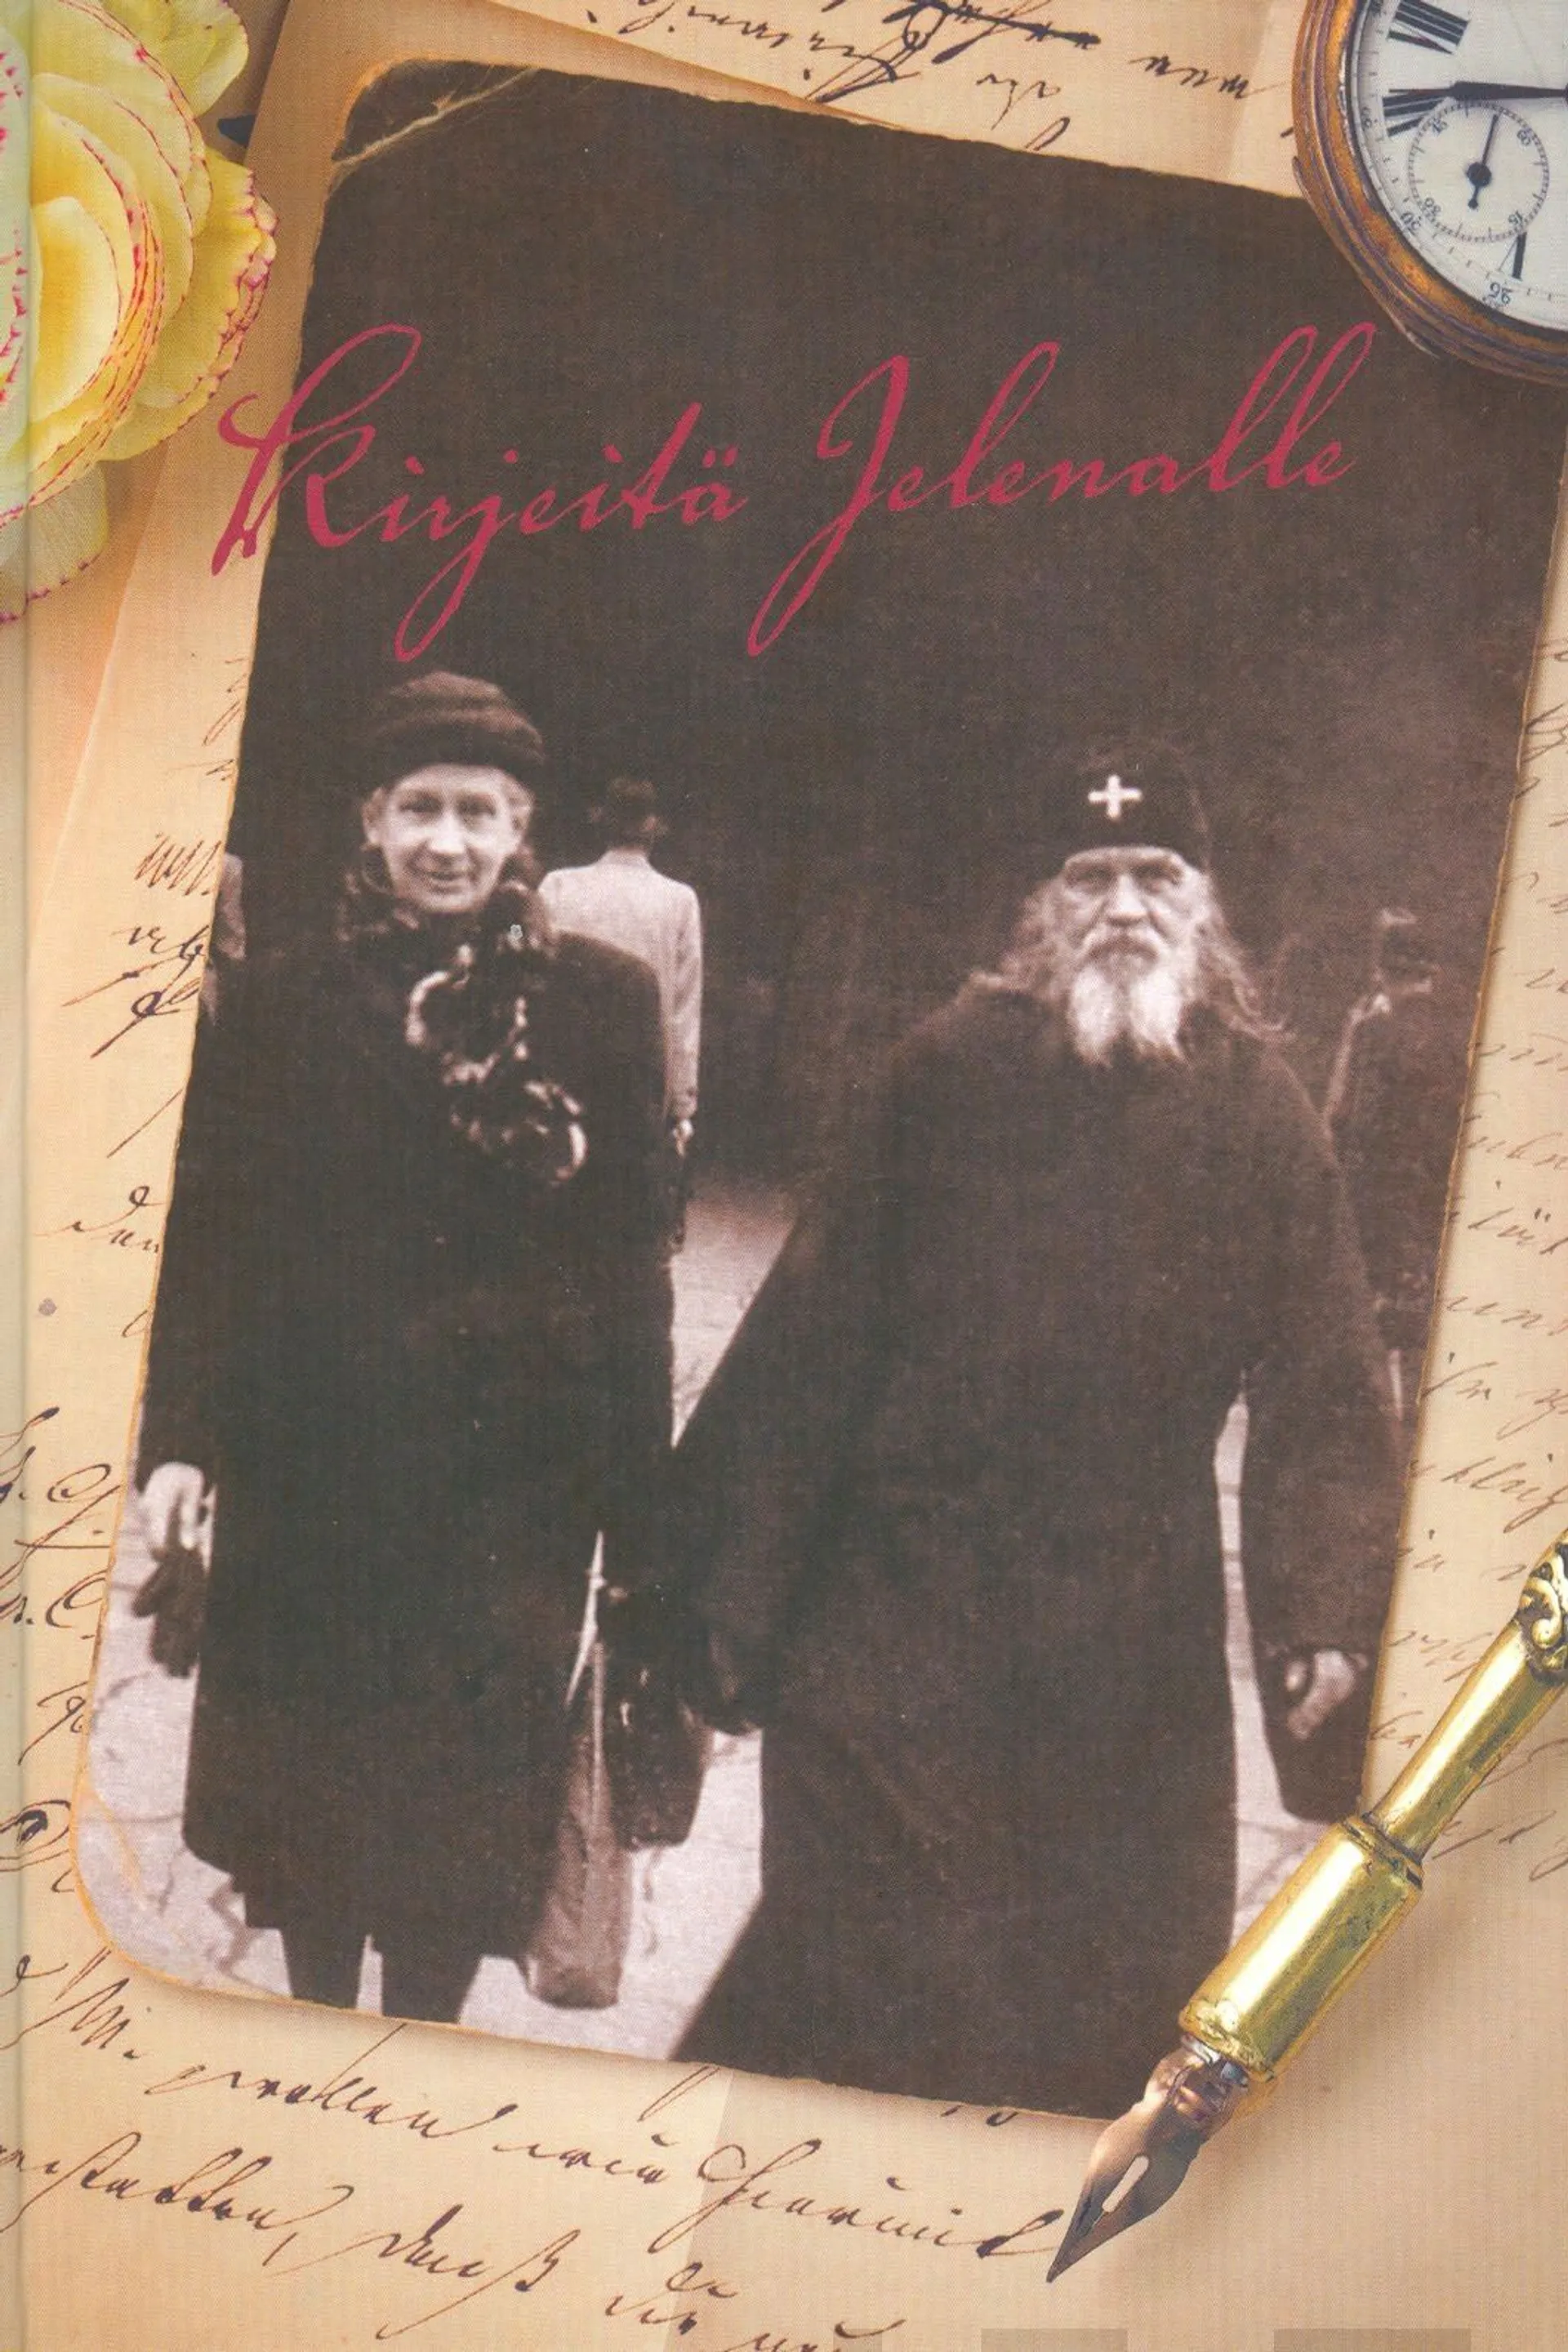 Kirjeitä Jelenalle - Skeemaigumeni Johanneksen kirjeitä Jelena Armfeltille vuosilta 1945-1958